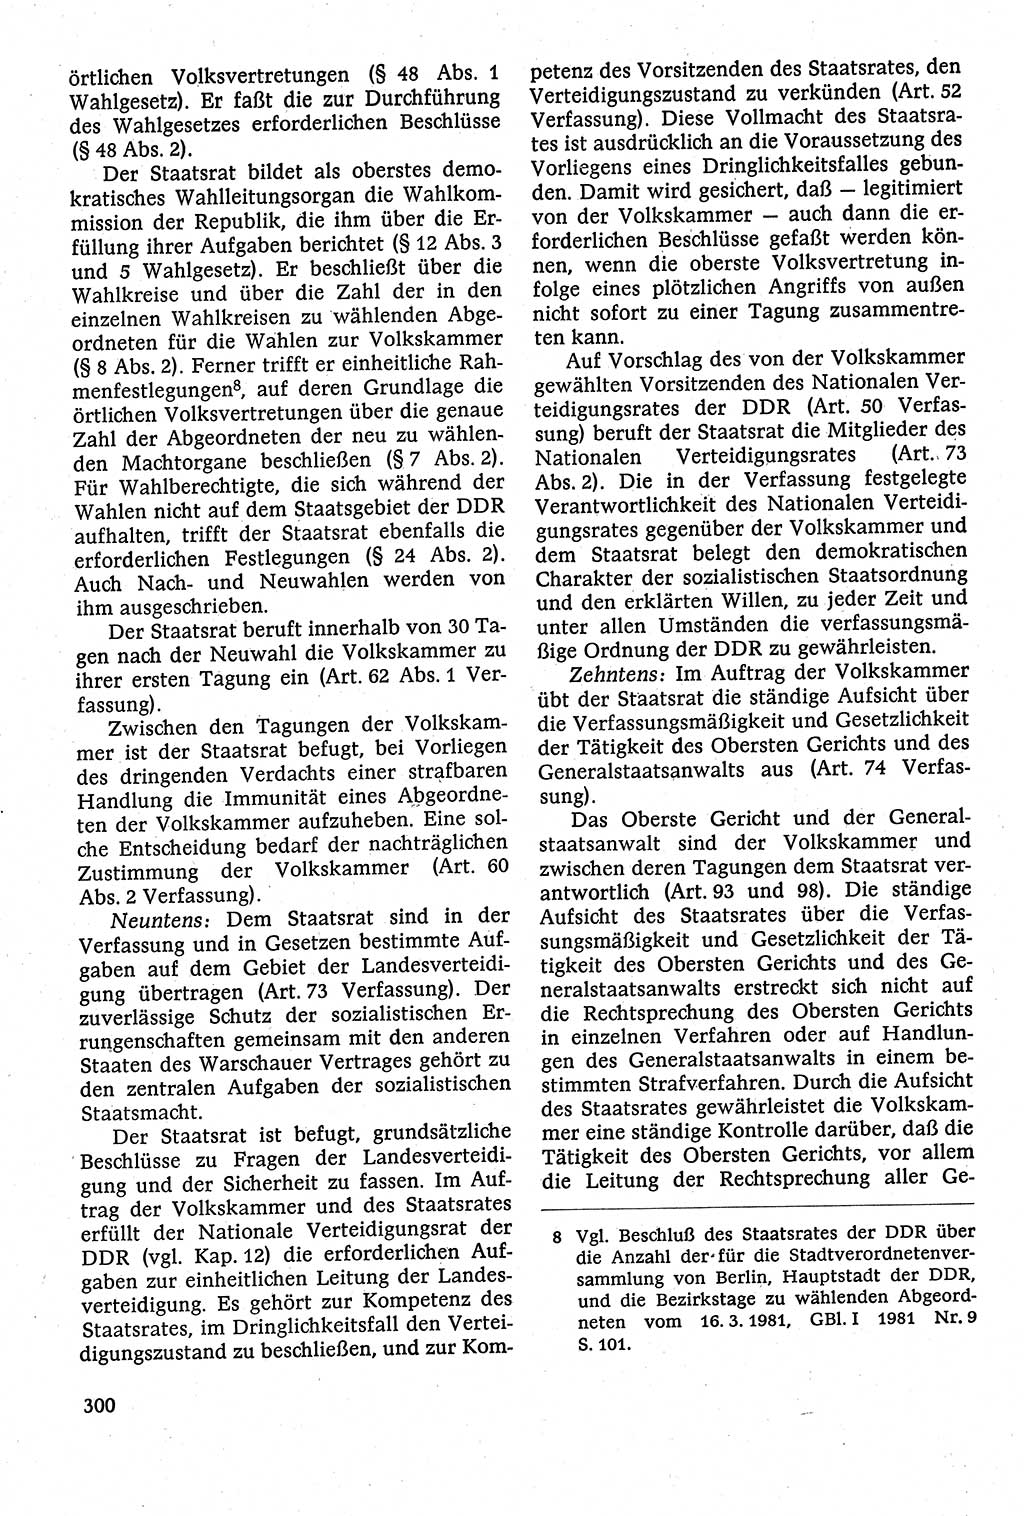 Staatsrecht der DDR [Deutsche Demokratische Republik (DDR)], Lehrbuch 1984, Seite 300 (St.-R. DDR Lb. 1984, S. 300)